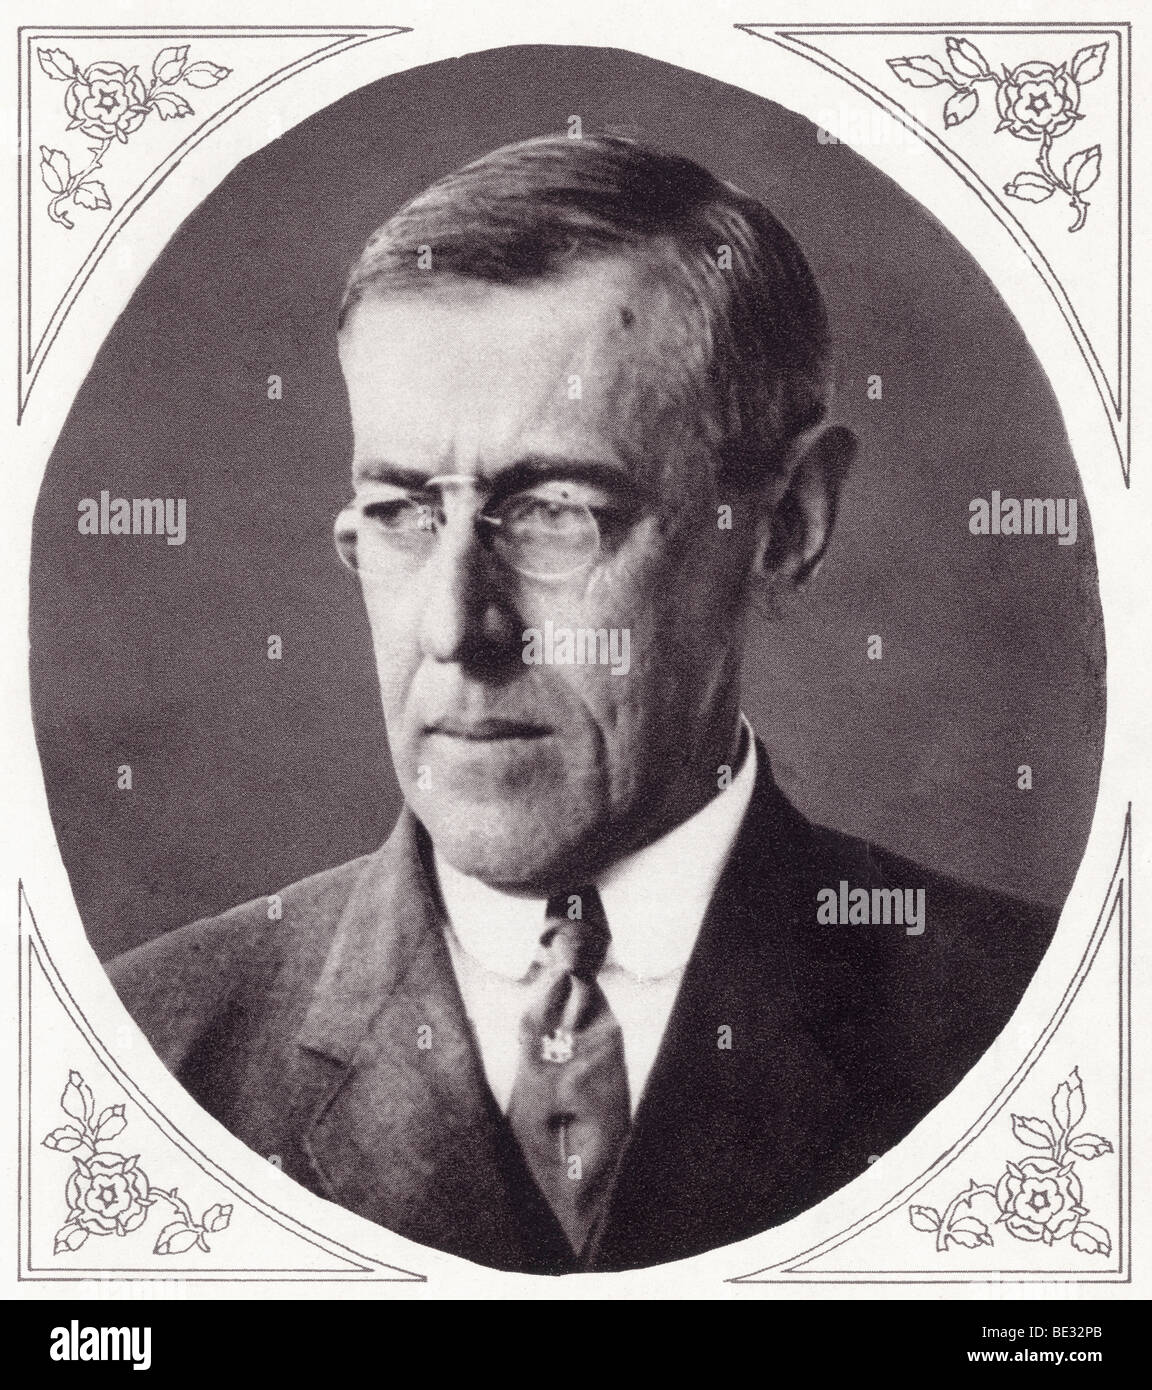 Thomas Woodrow Wilson, 1856 to 1924. 28th President of the United States. Stock Photo